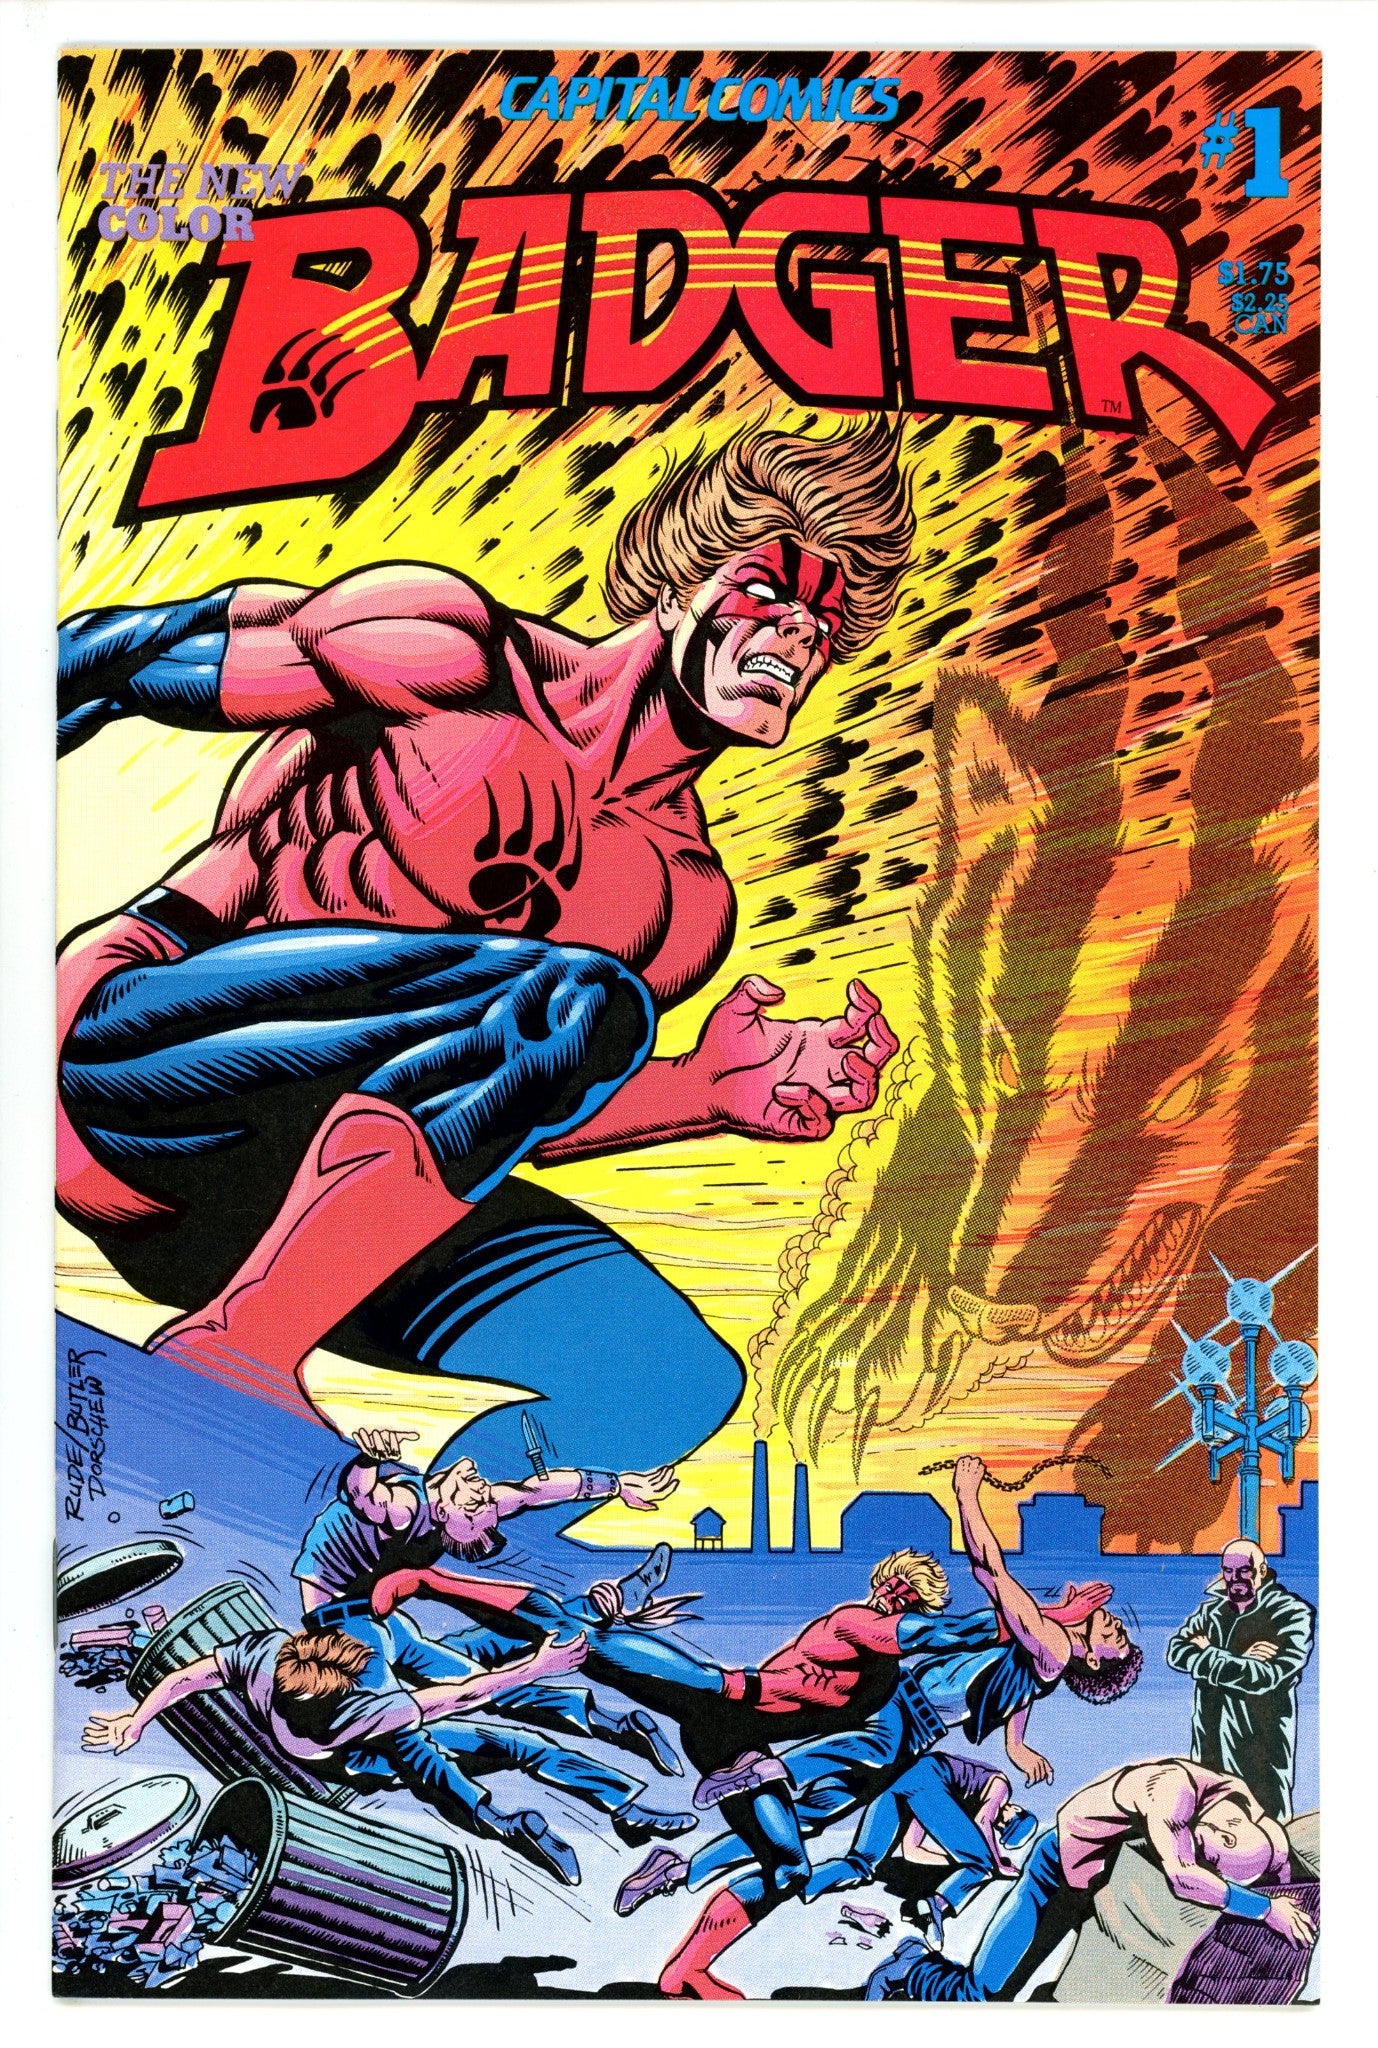 Badger Vol 1 1 (1983)